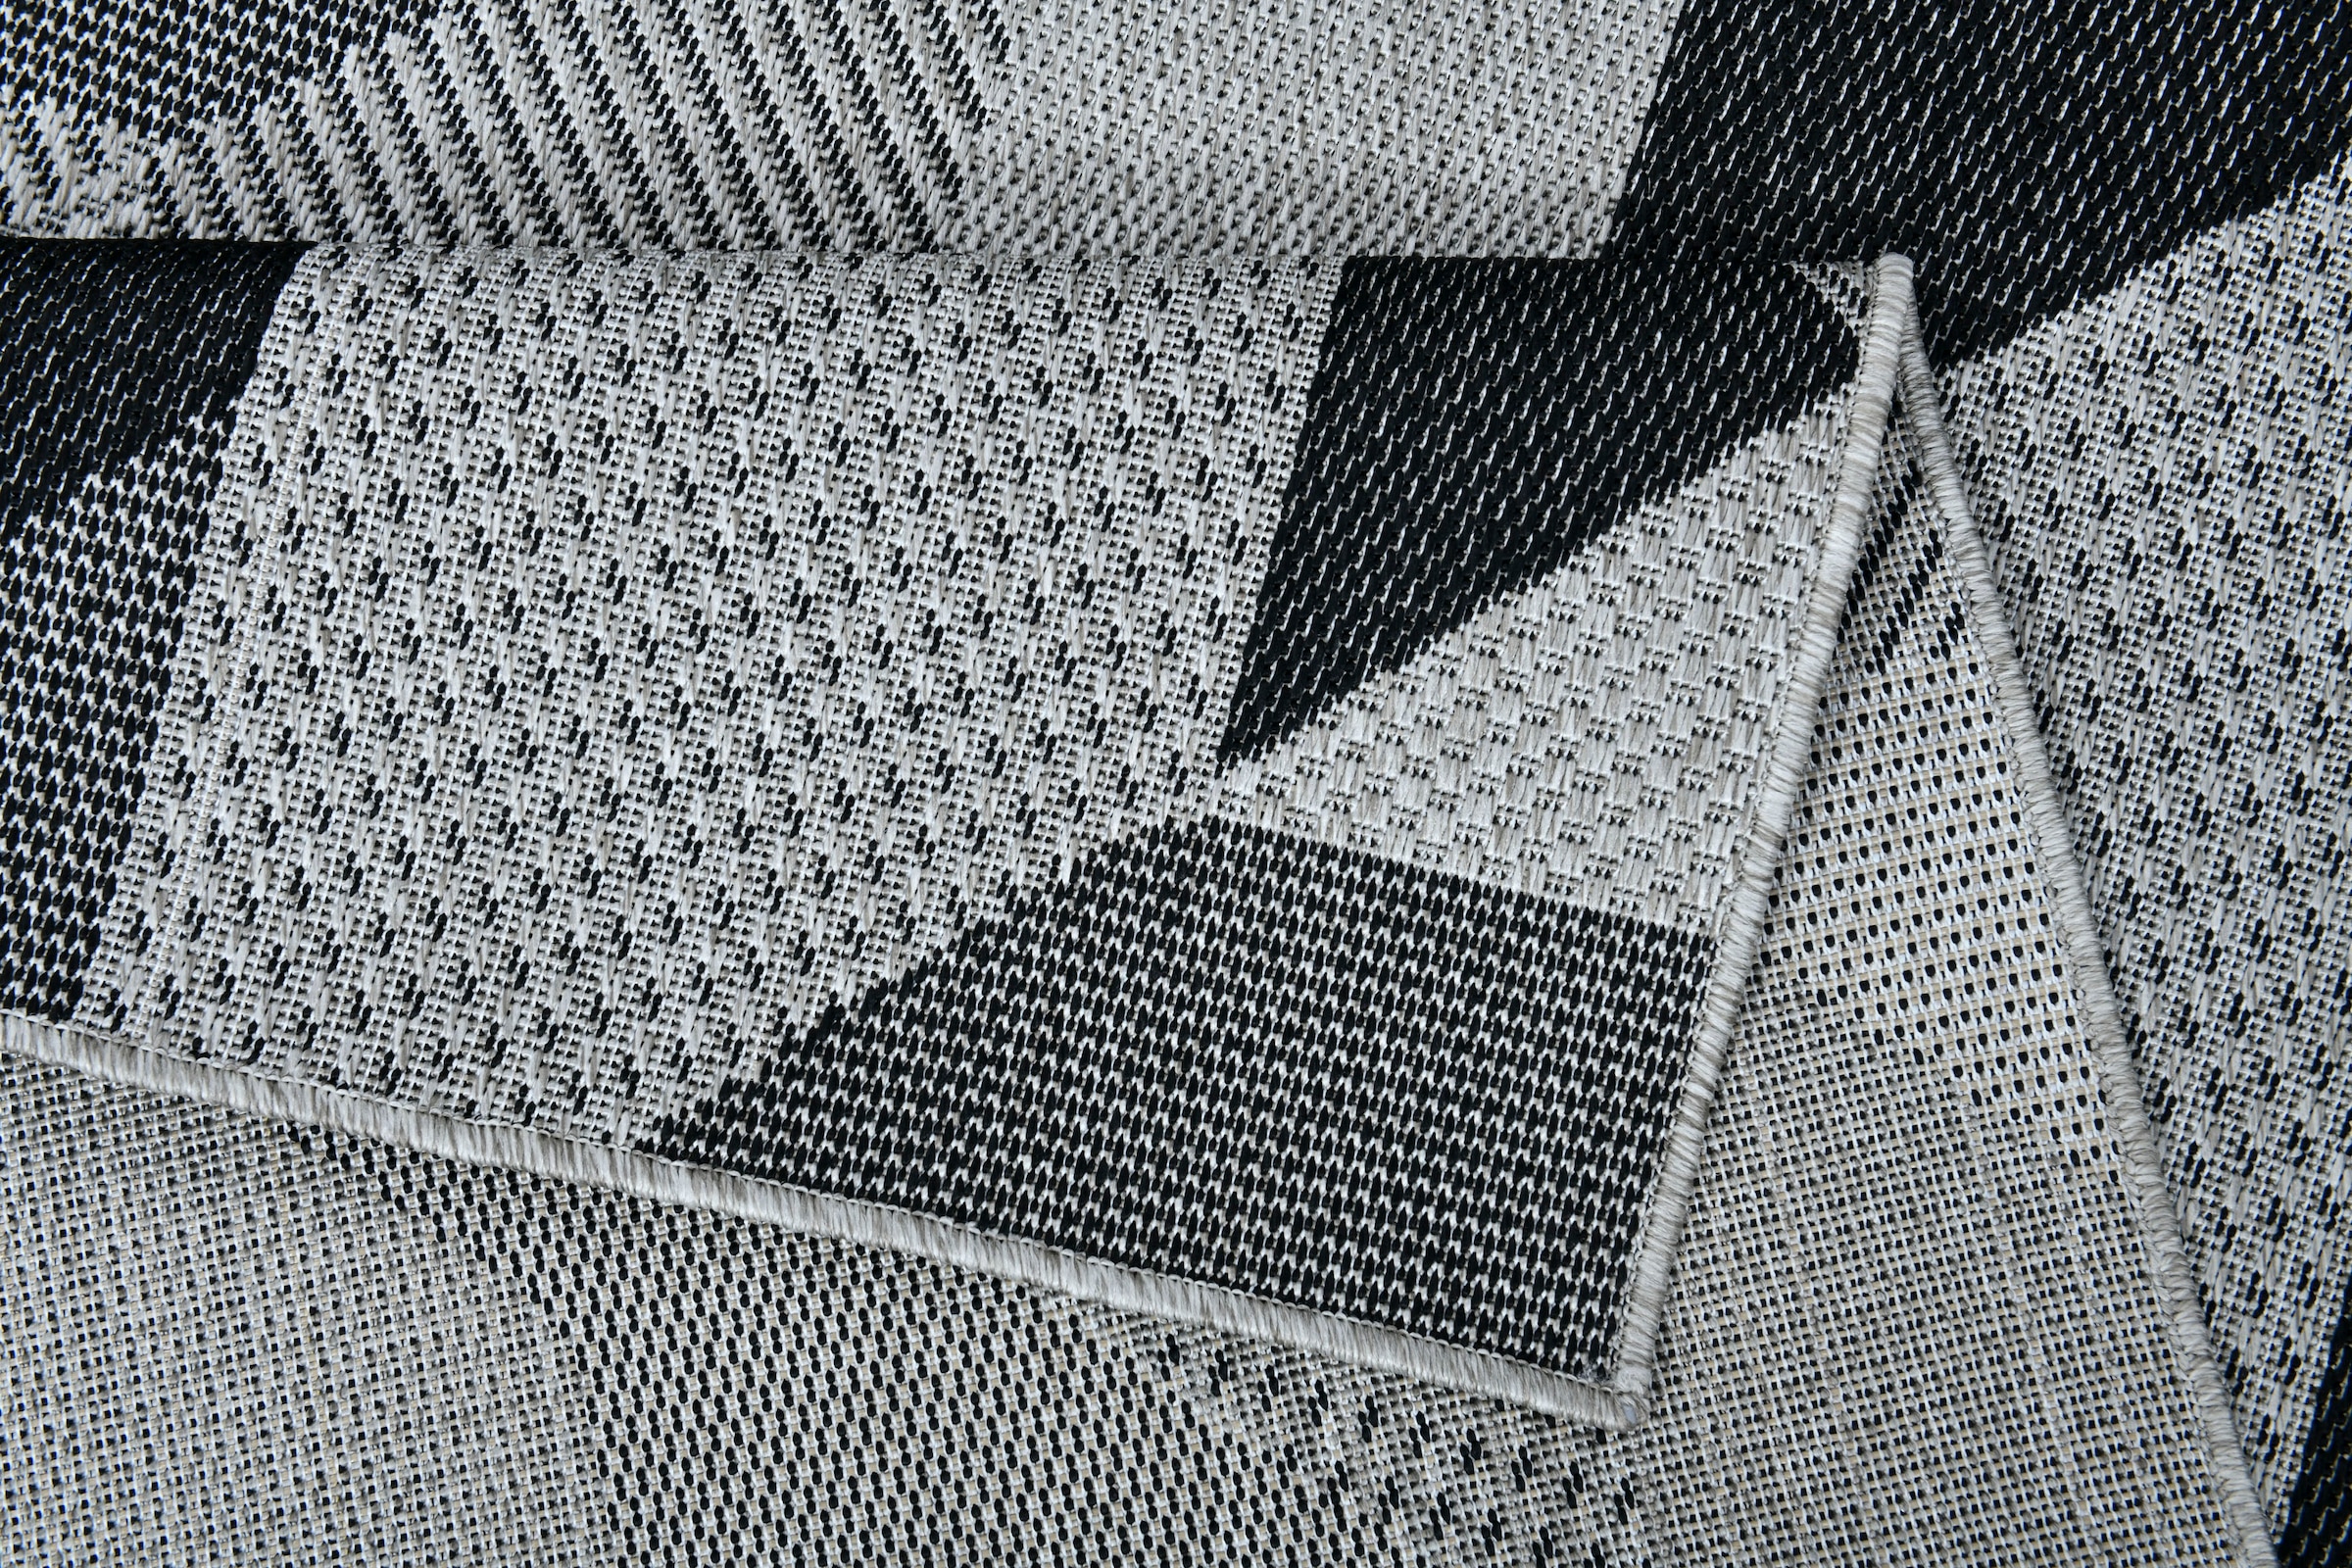 Home affaire Teppich »Borfin«, rechteckig, mit geometrischem Muster, schmutzabweisend, In- und Outdoor geeignet